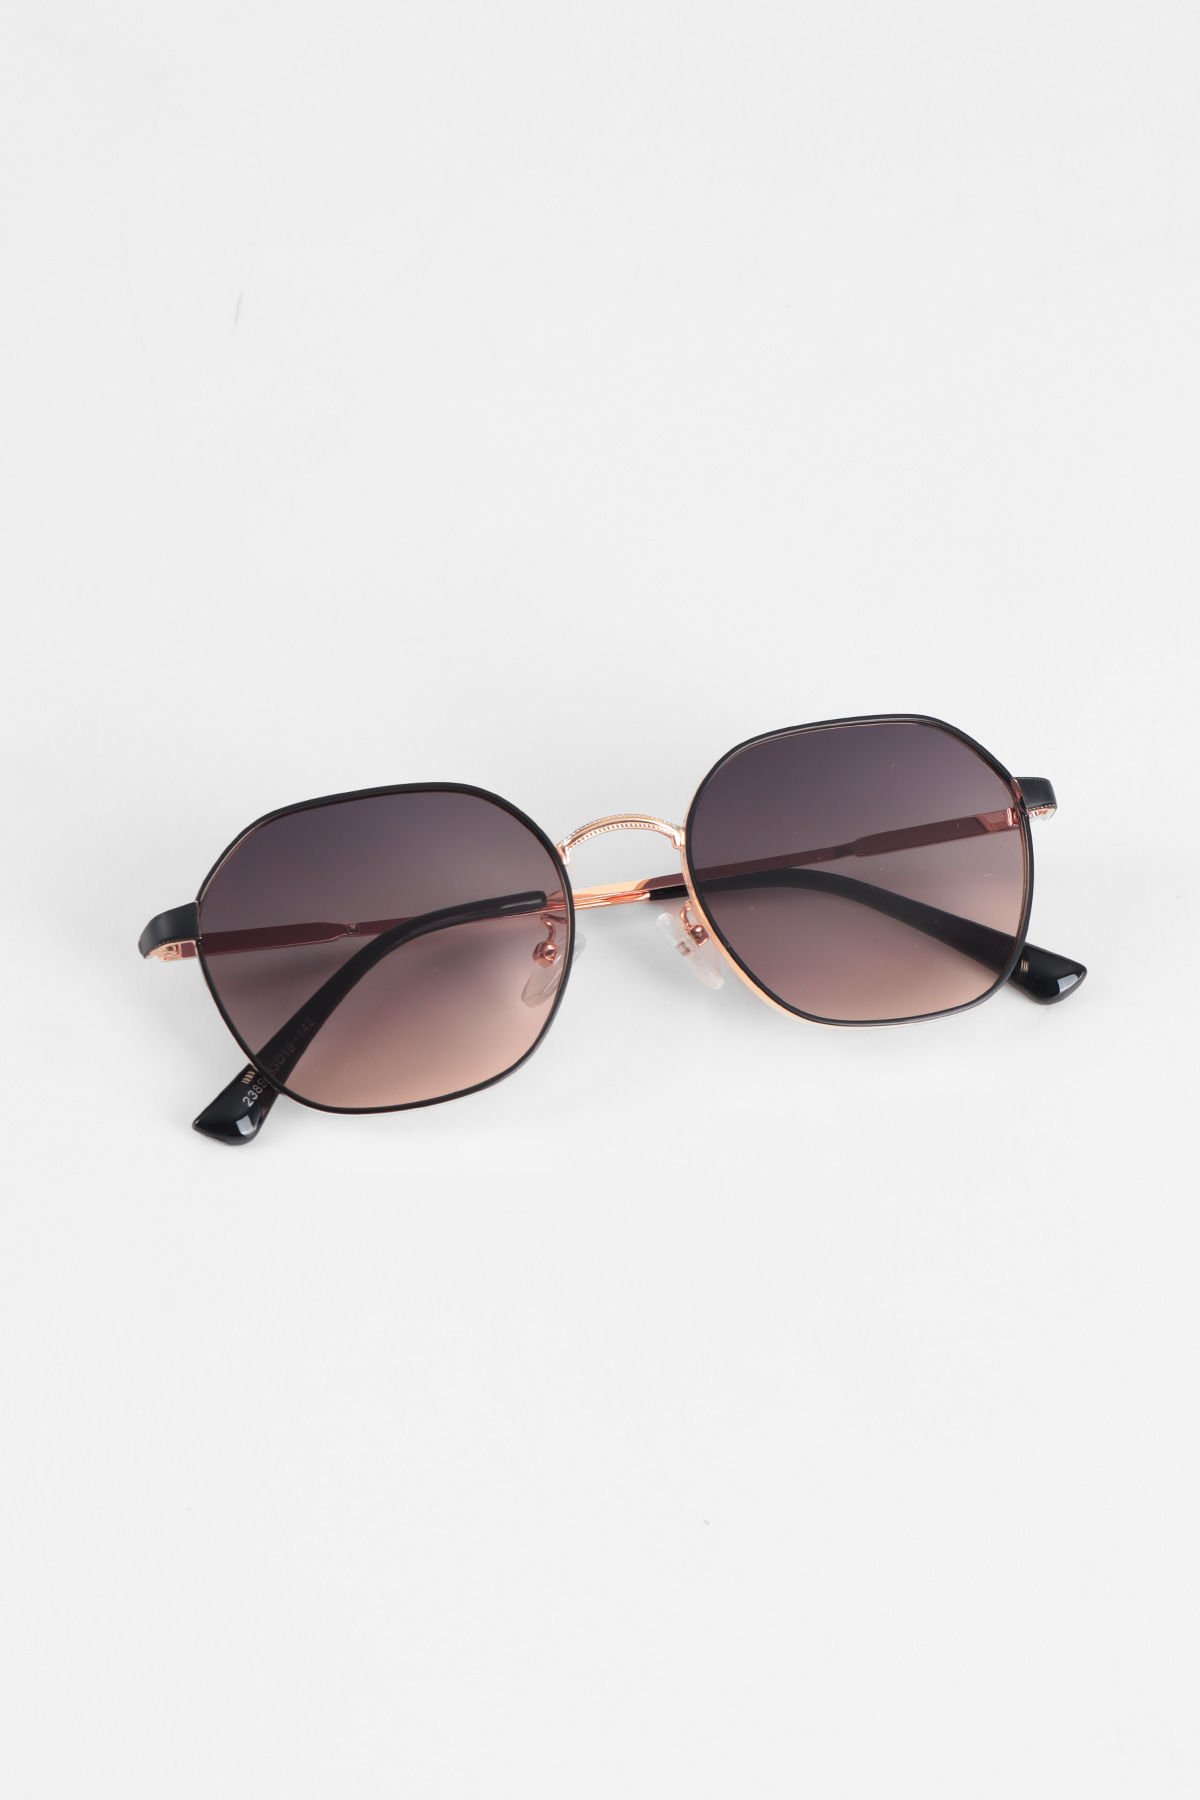 Oynx Oval Metal Güneş Gözlüğü - Degarde Çift Renkli Cam